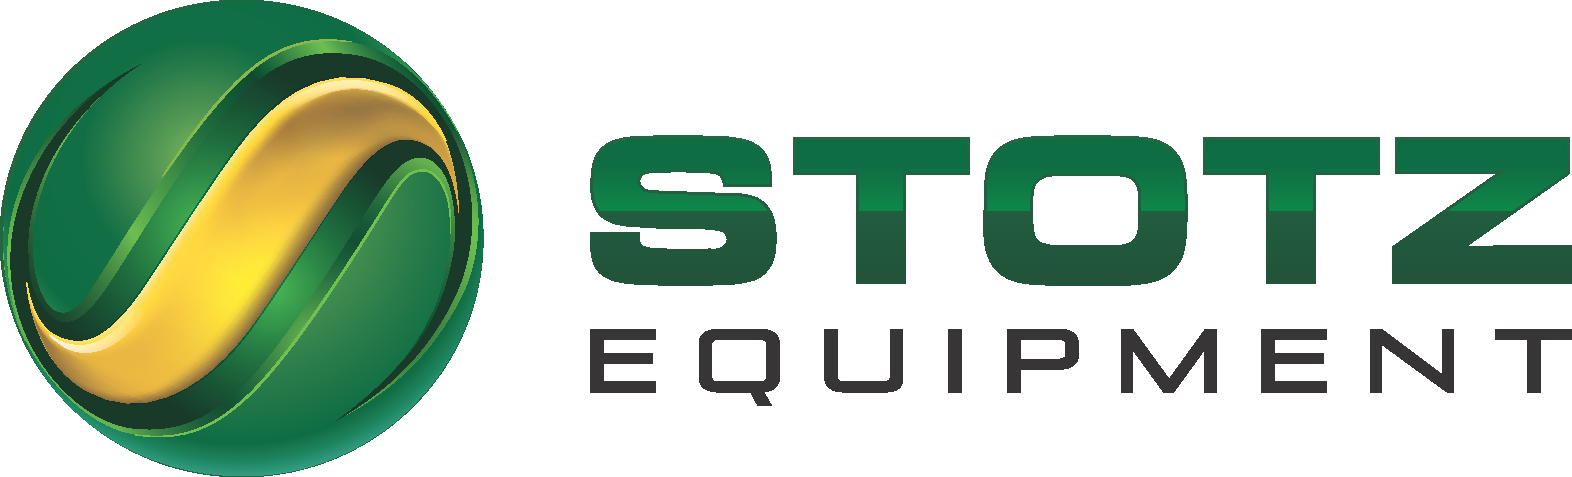 State Fair Sponsor - Stotz Equipment